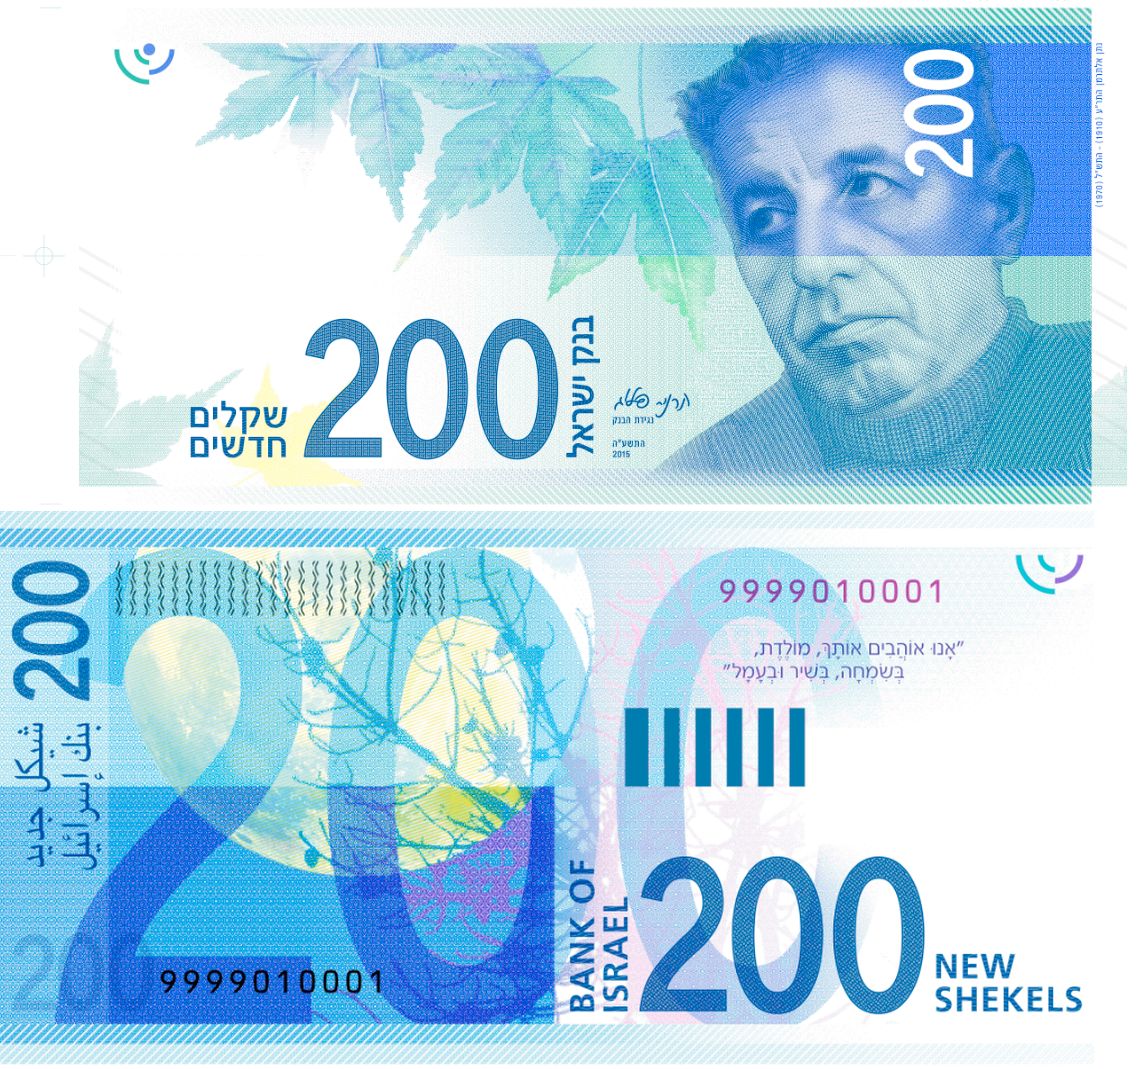 Izrael wprowadzi do obiegu nowy banknot o nominale 200 szekli